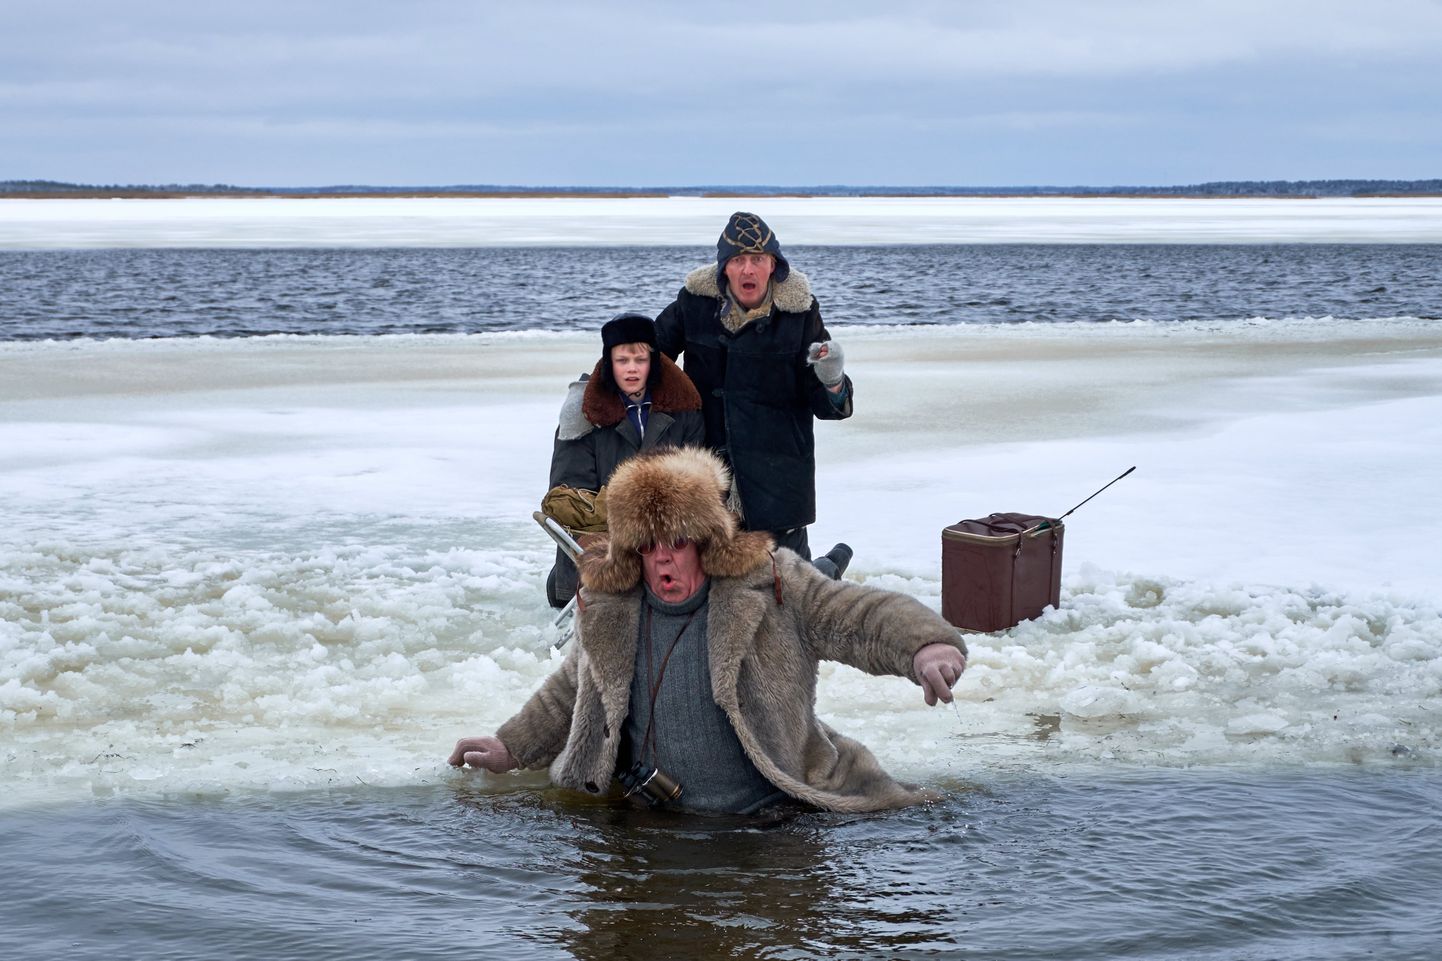 Eesti kinolevisse jõuab Peeter Simmi film «Vee peal» järgmise aasta jaanuaris.